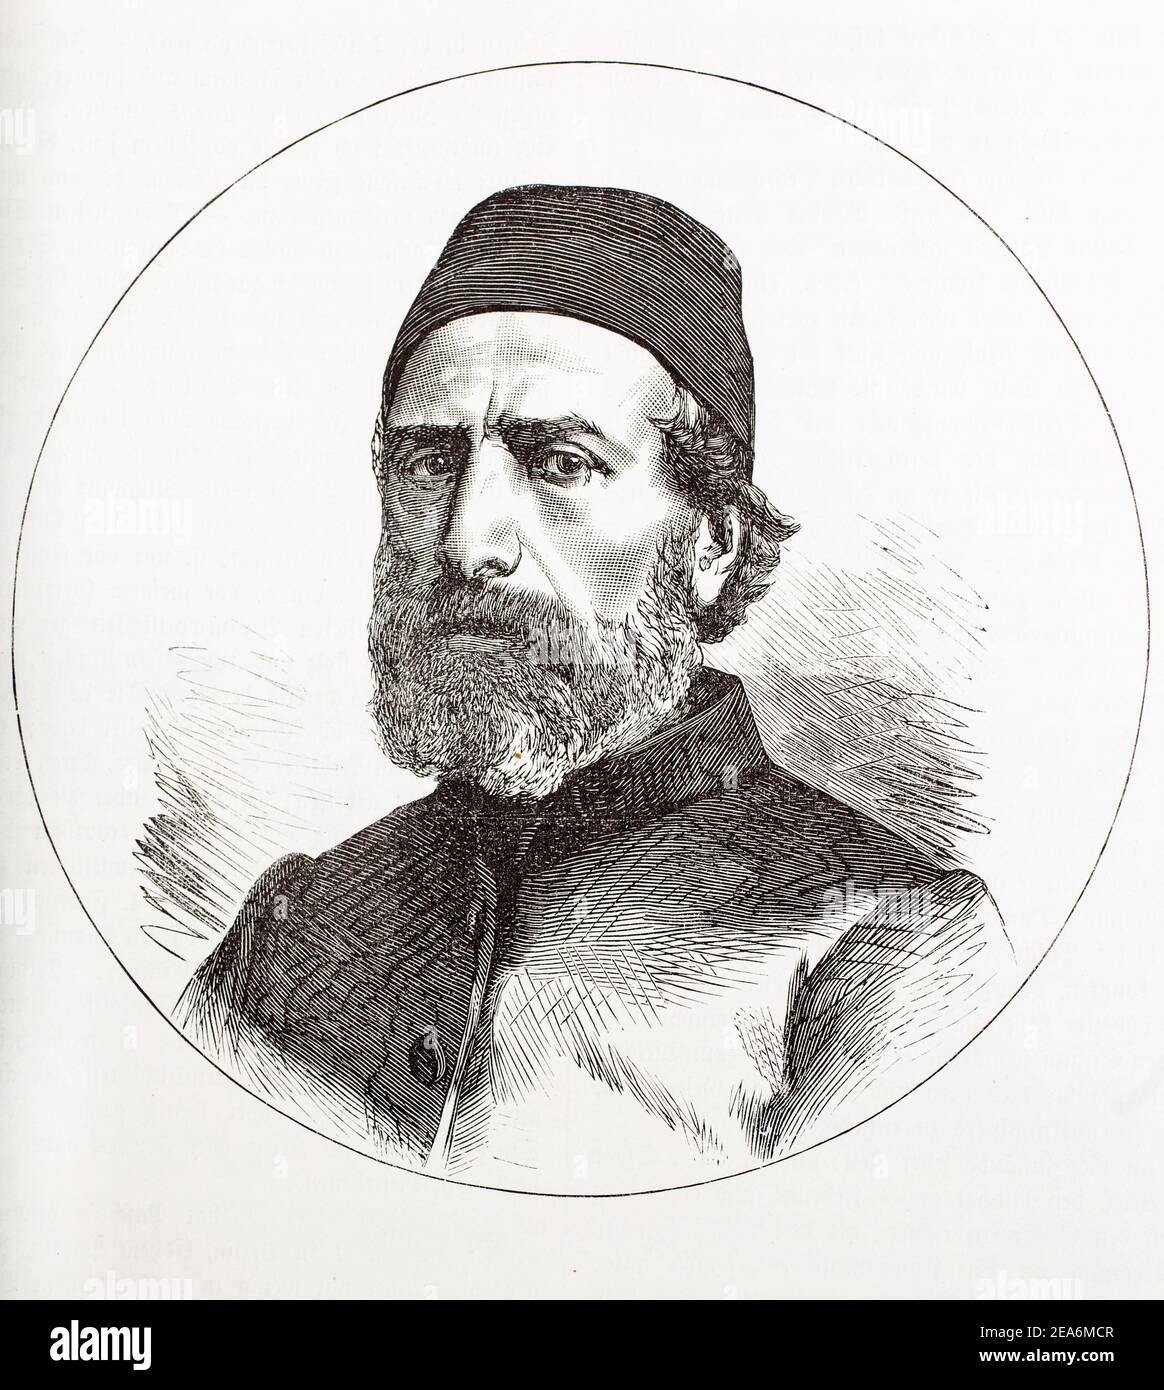 Ibrahim Edhem Pascha (1819 - 1893) ein osmanischer Staatsmann, Großwesir zwischen dem 5. Februar 1877 und 11. Januar 1878 Stockfoto